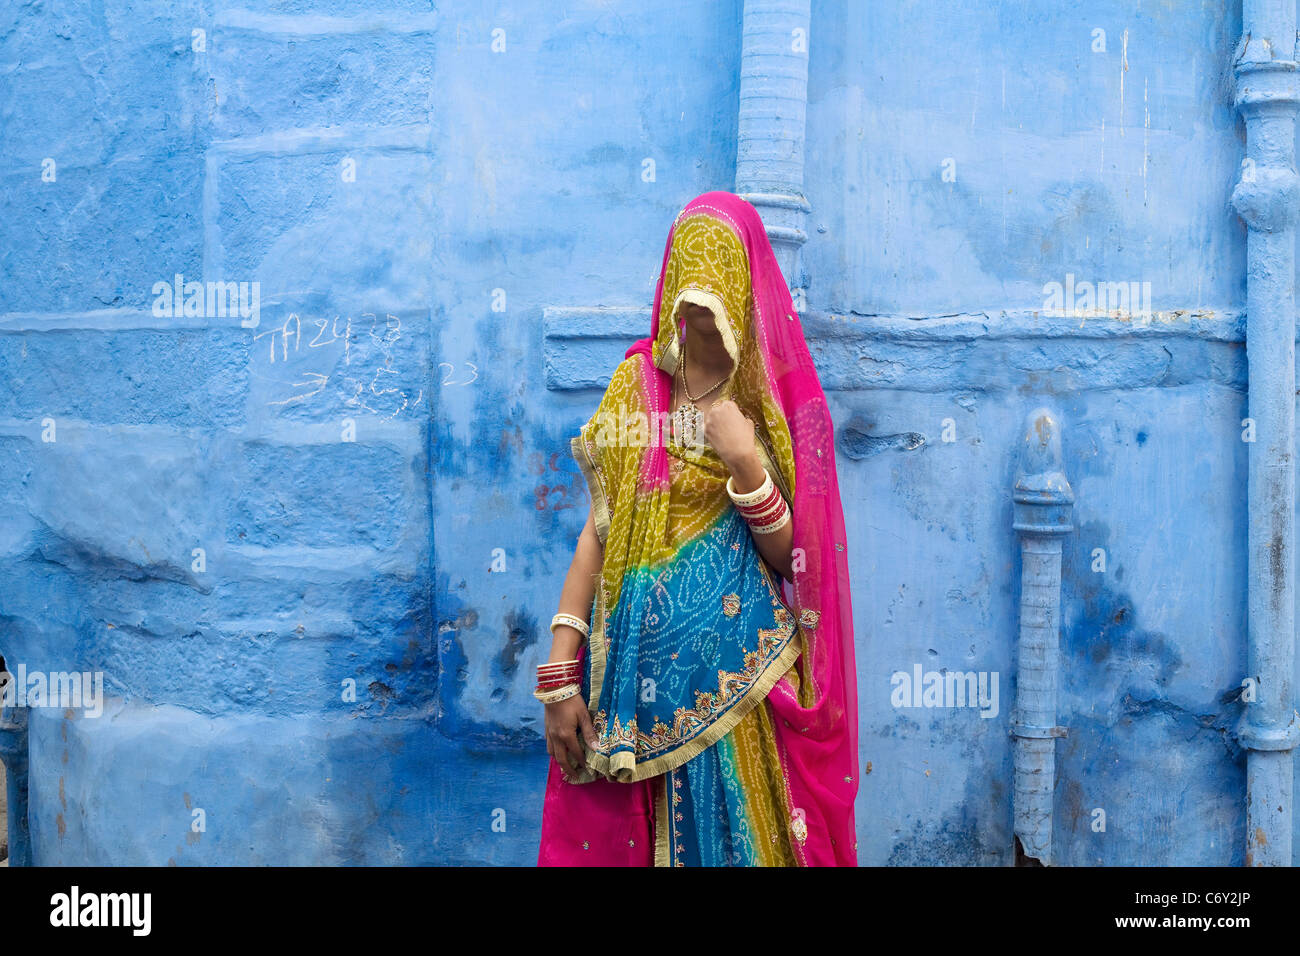 Eine Frau in traditioneller Kleidung steht vor einer der berühmten blauen Häuser von Jodhpur, Indien Rajasthan Zustand Stockfoto